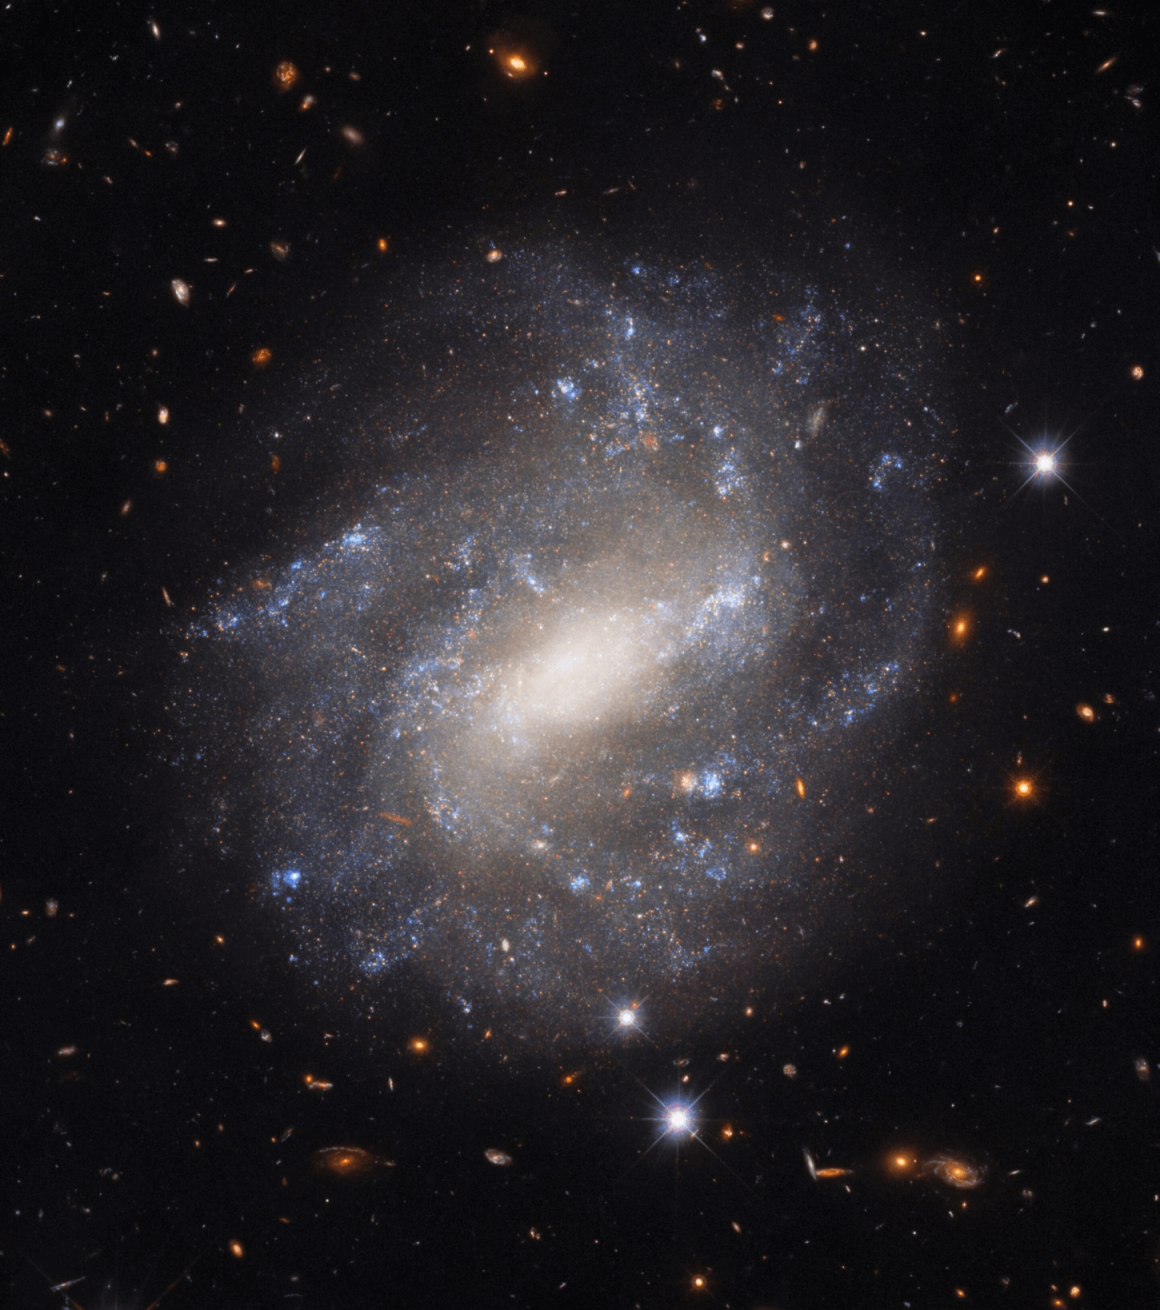 Ova nevjerojatna fotografija snimljena svemirskim teleskopom Hubble prikazuje UGC 9391, galaksiju koja se nalazi oko 130 milijuna svjetlosnih godina od Zemlje (©ESA/Hubble & NASA, A. Riess et al).